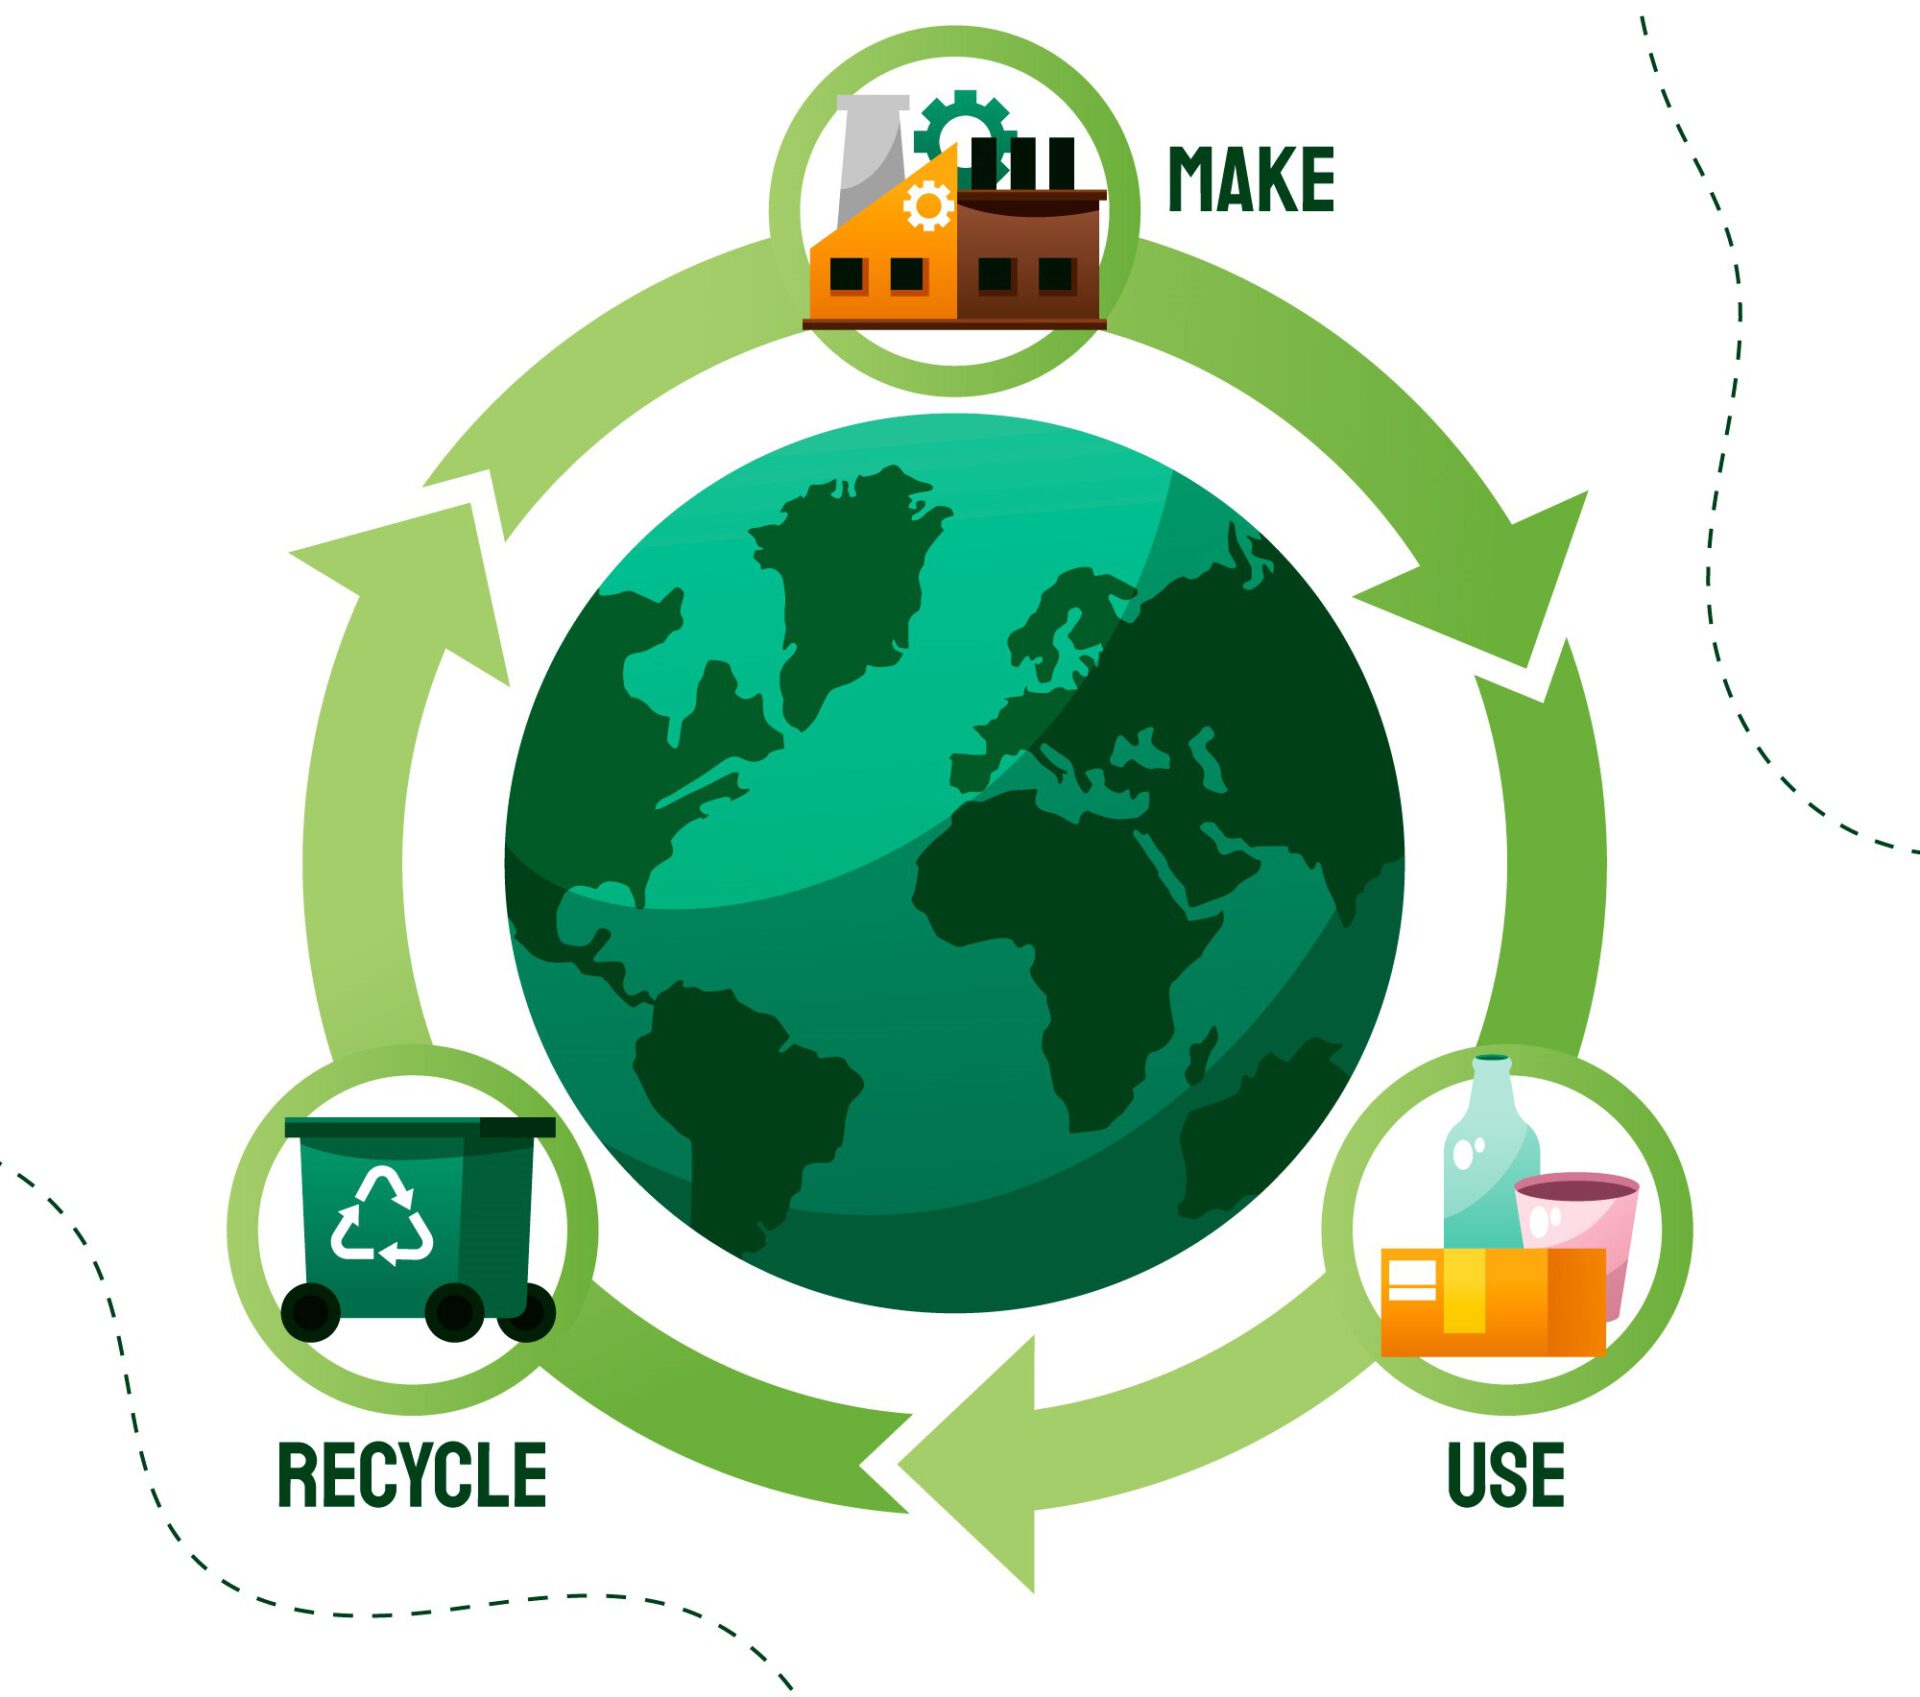 地球を中心に循環型社会の「作る、使う、リサイクルする」のサイクルを示すイラスト